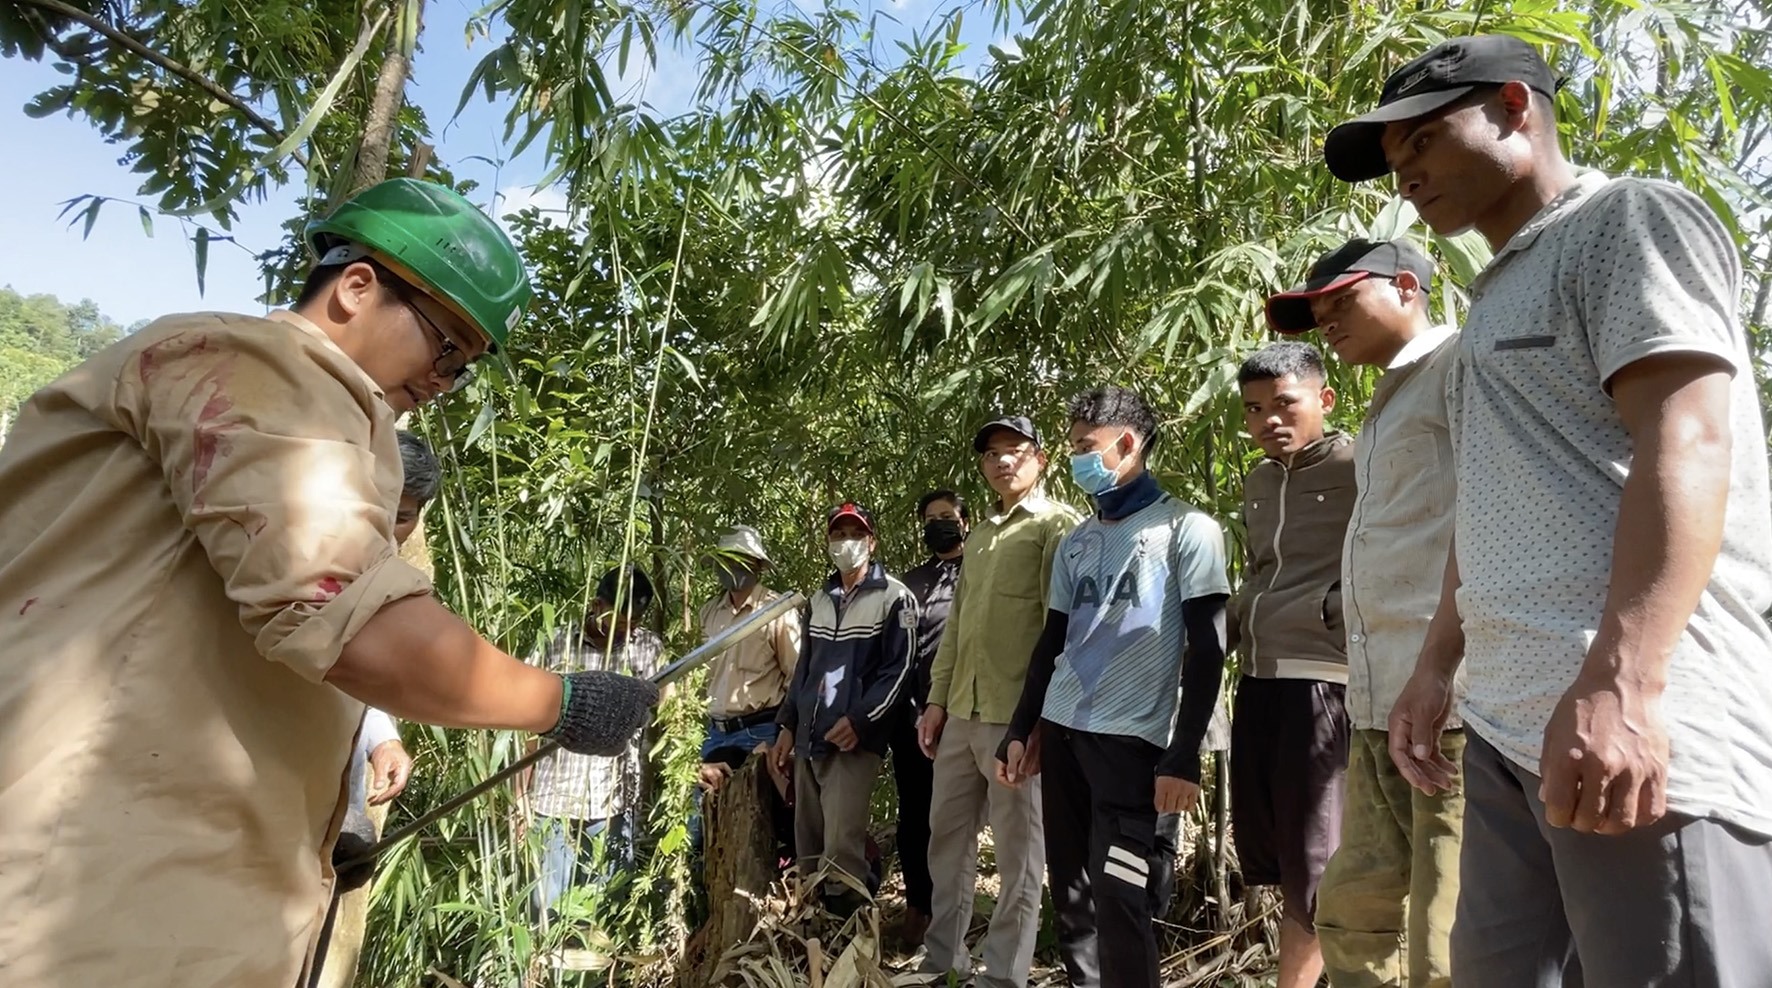 Tập huấn cho người dân thôn Chênh Vênh, xã Hướng Phùng về kỹ thuật khai thác tác động thấp lâm sản ngoài gỗ rừng tự nhiên - Ảnh: T.T